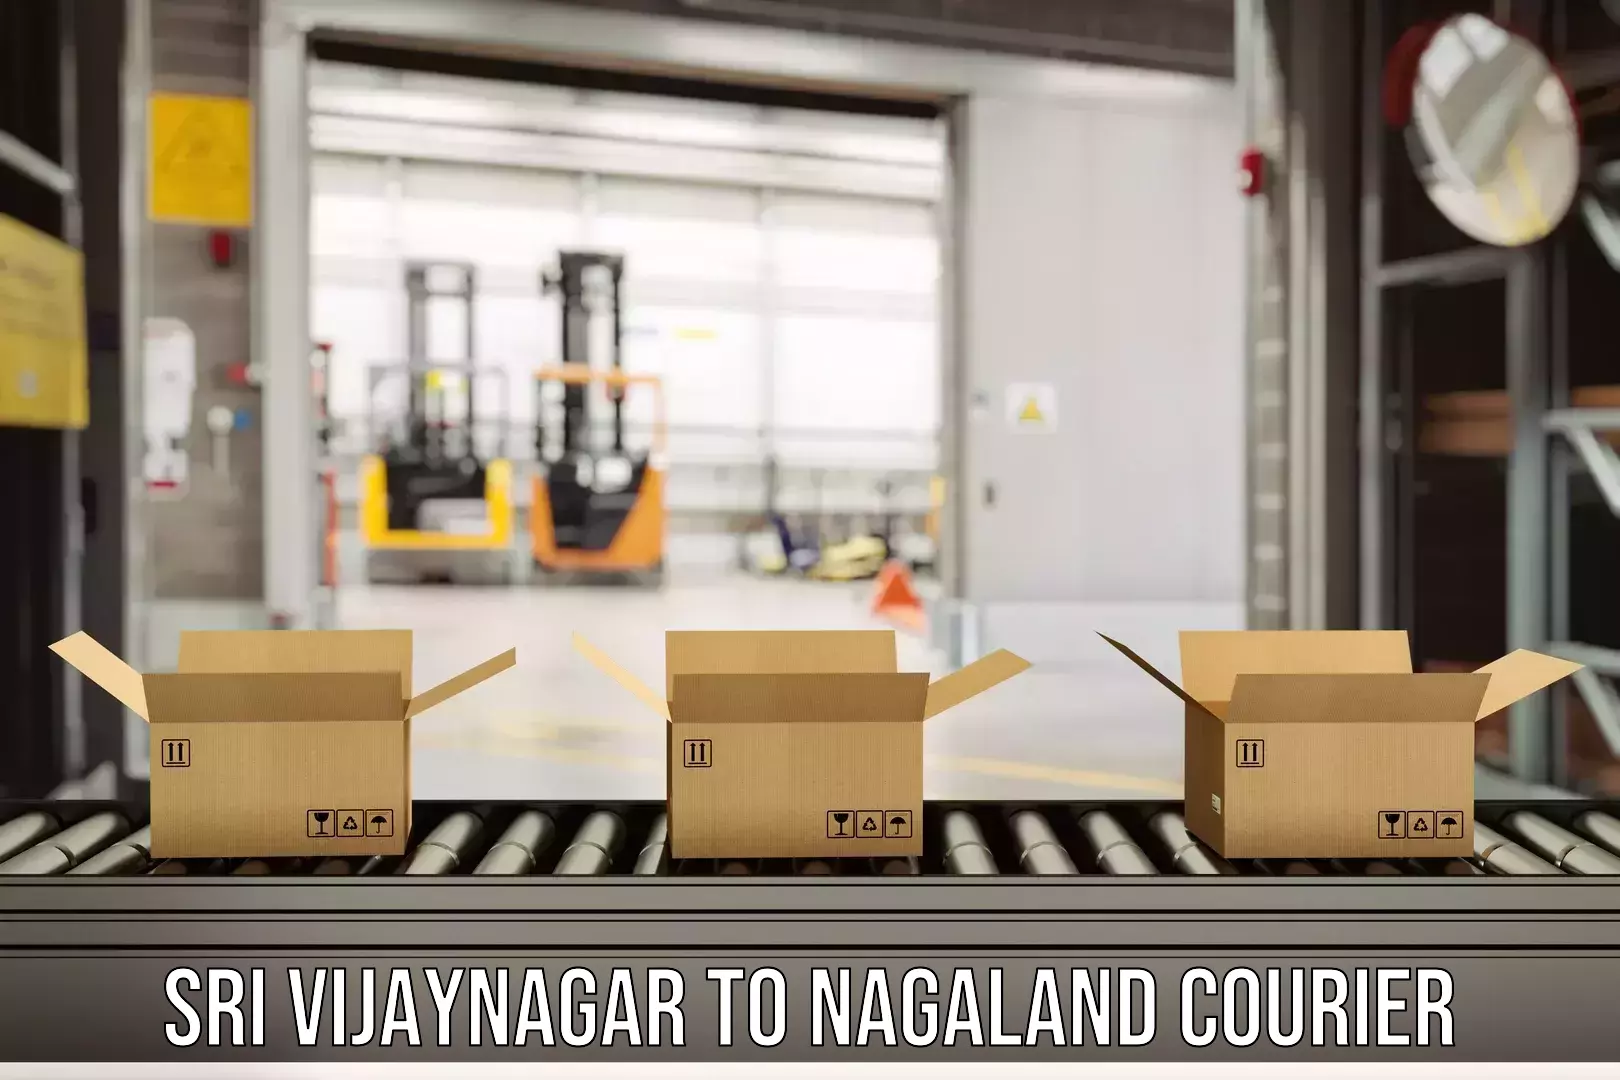 Modern courier technology in Sri Vijaynagar to Peren